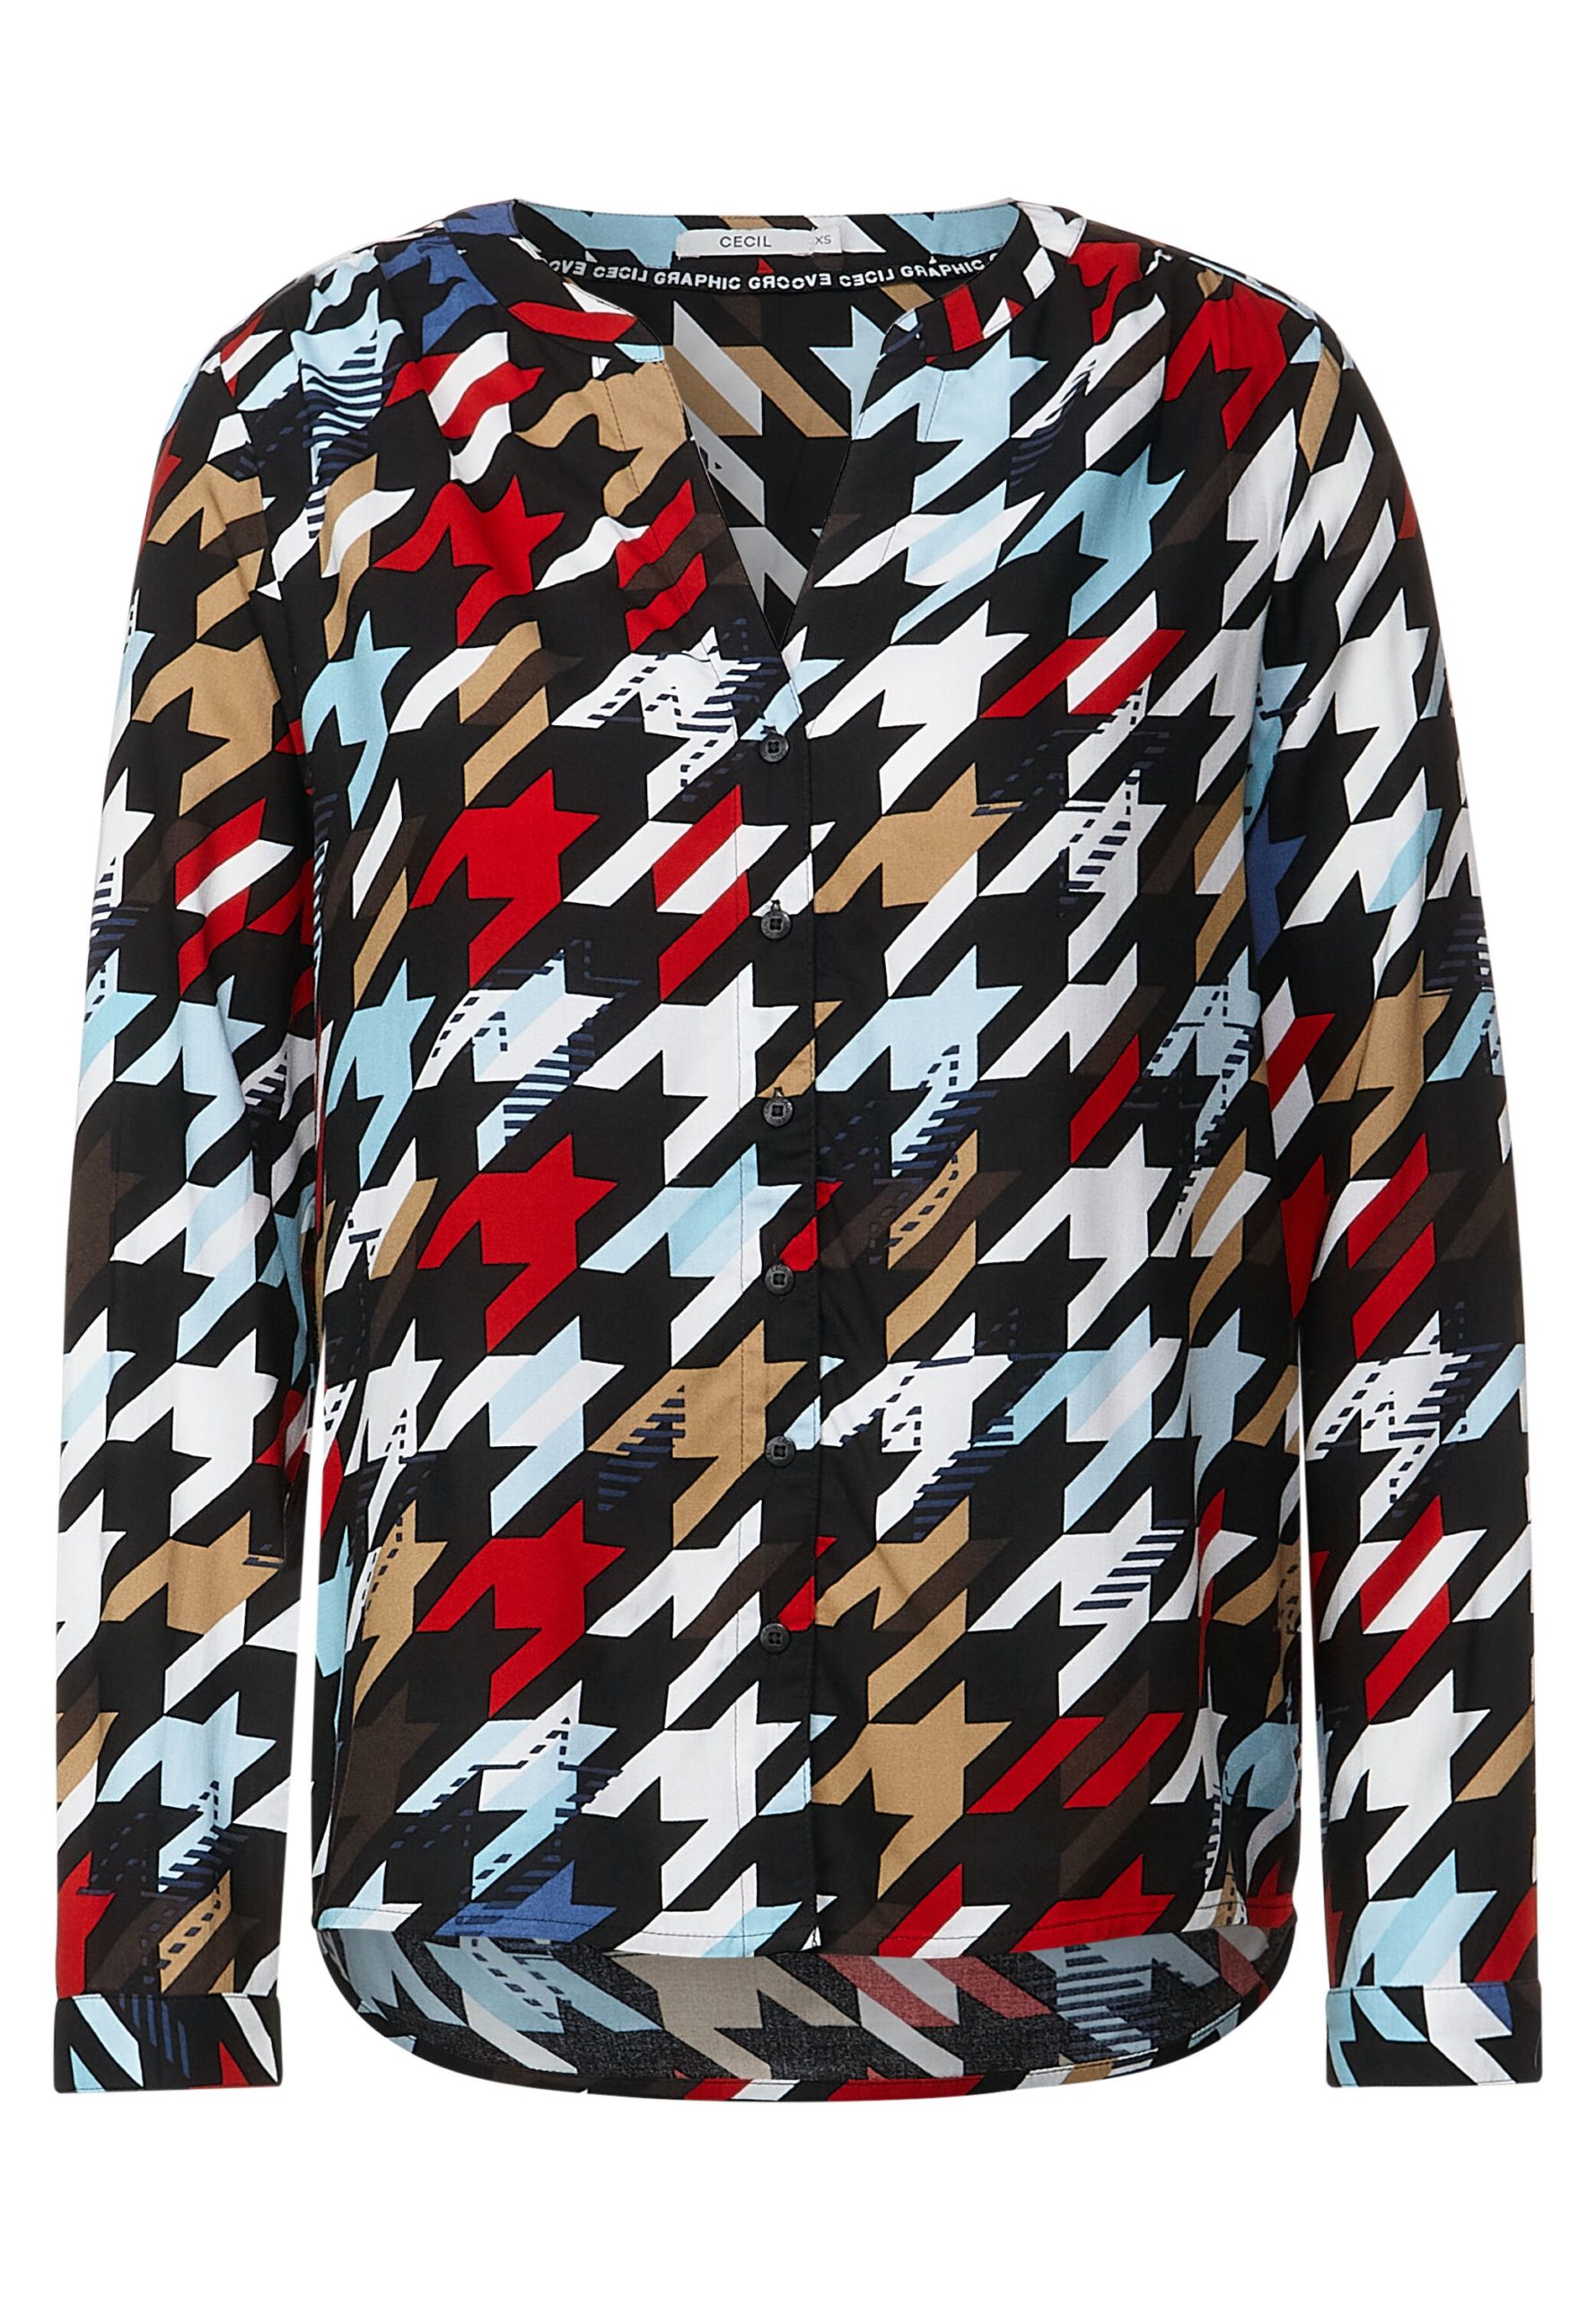 Bluse mit Multicolorprint von Cecil - Mode Flach Onlineshop